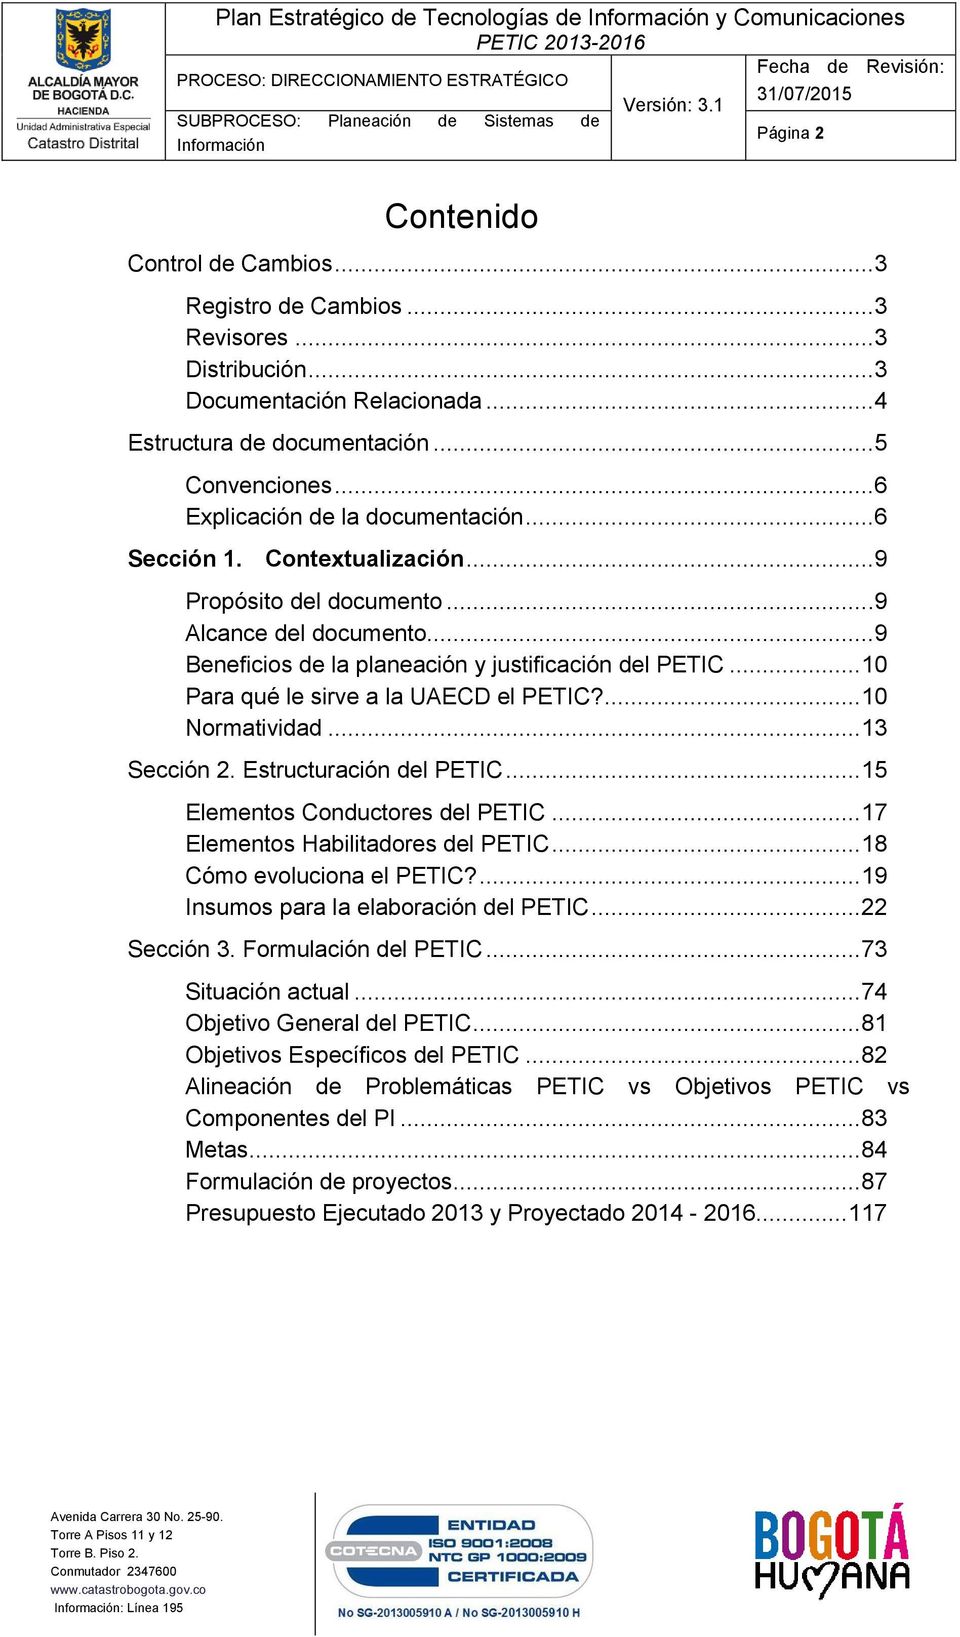 ..9 Beneficios de la planeación y justificación del PETIC... 10 Para qué le sirve a la UAECD el PETIC?... 10 Normatividad... 13 Sección 2. Estructuración del PETIC... 15 Elementos Conductores del PETIC.